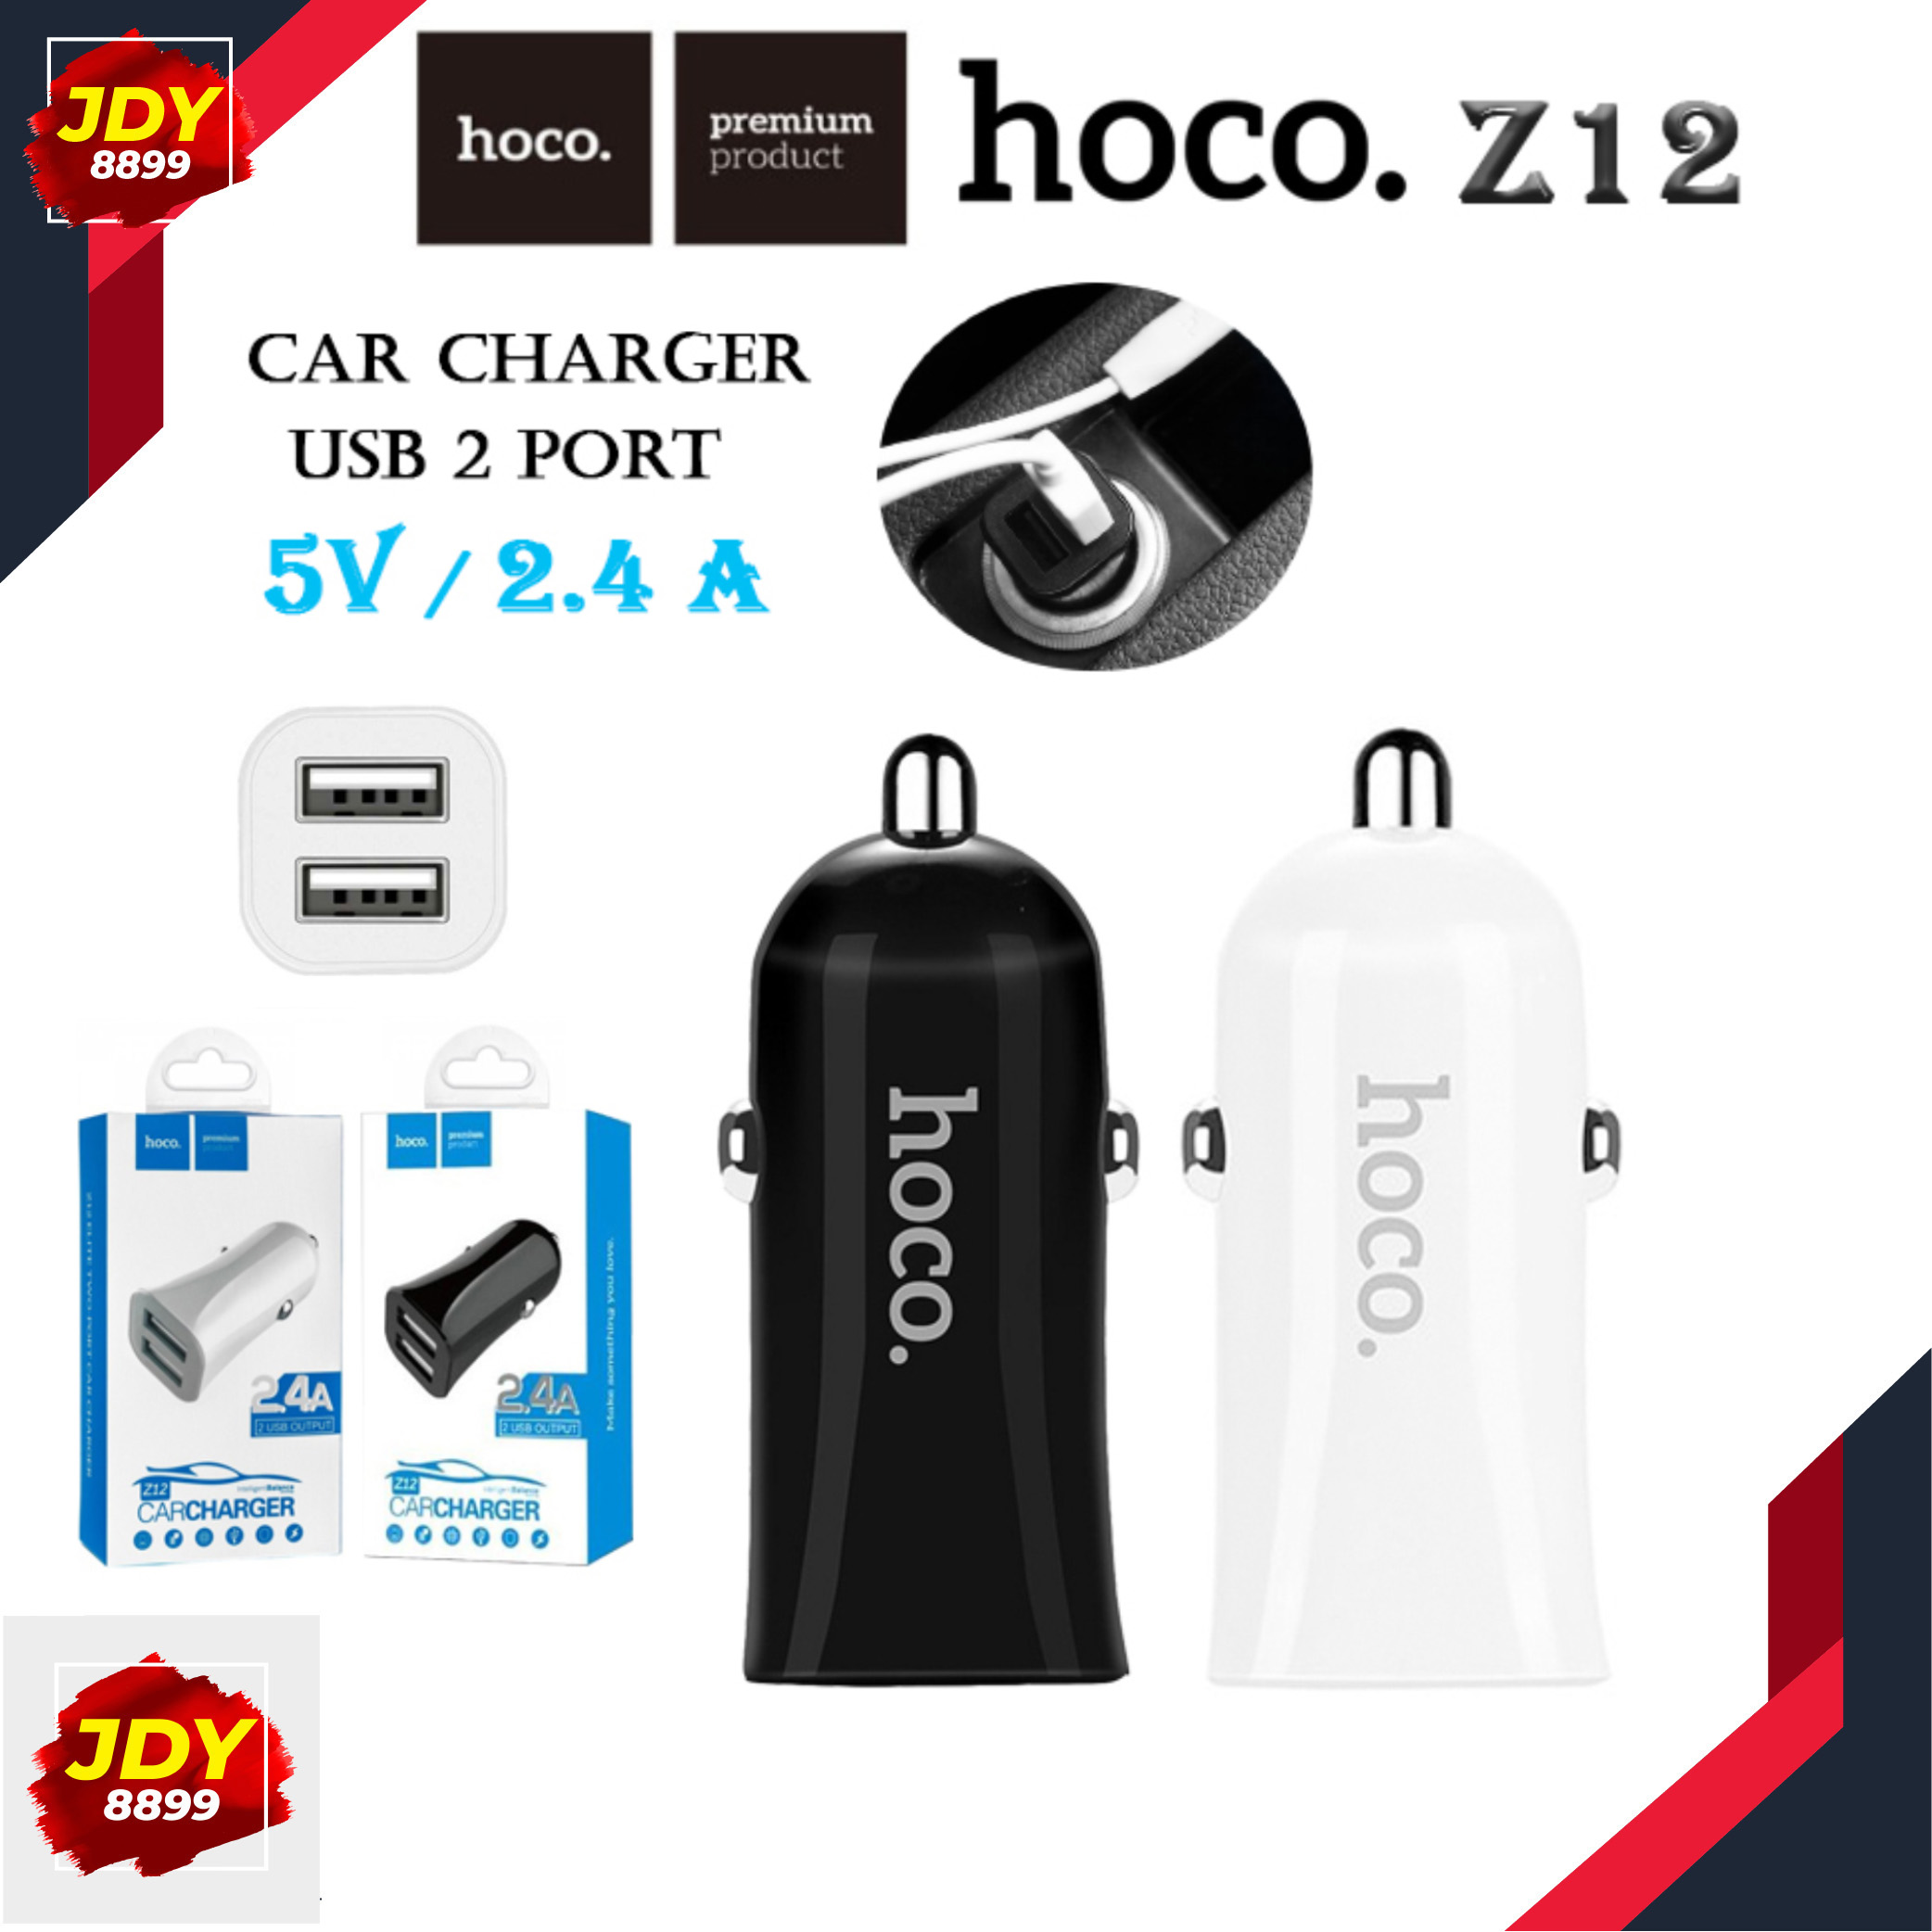 HOCO Z12 ของแท้ 100% Car Charger DUAL USB 2 port 5V/2.4A หัวชาร์จในรถยนต์ ที่ชาร์จในรถชาร์จเร็วแบบ 2 USB JDY8899